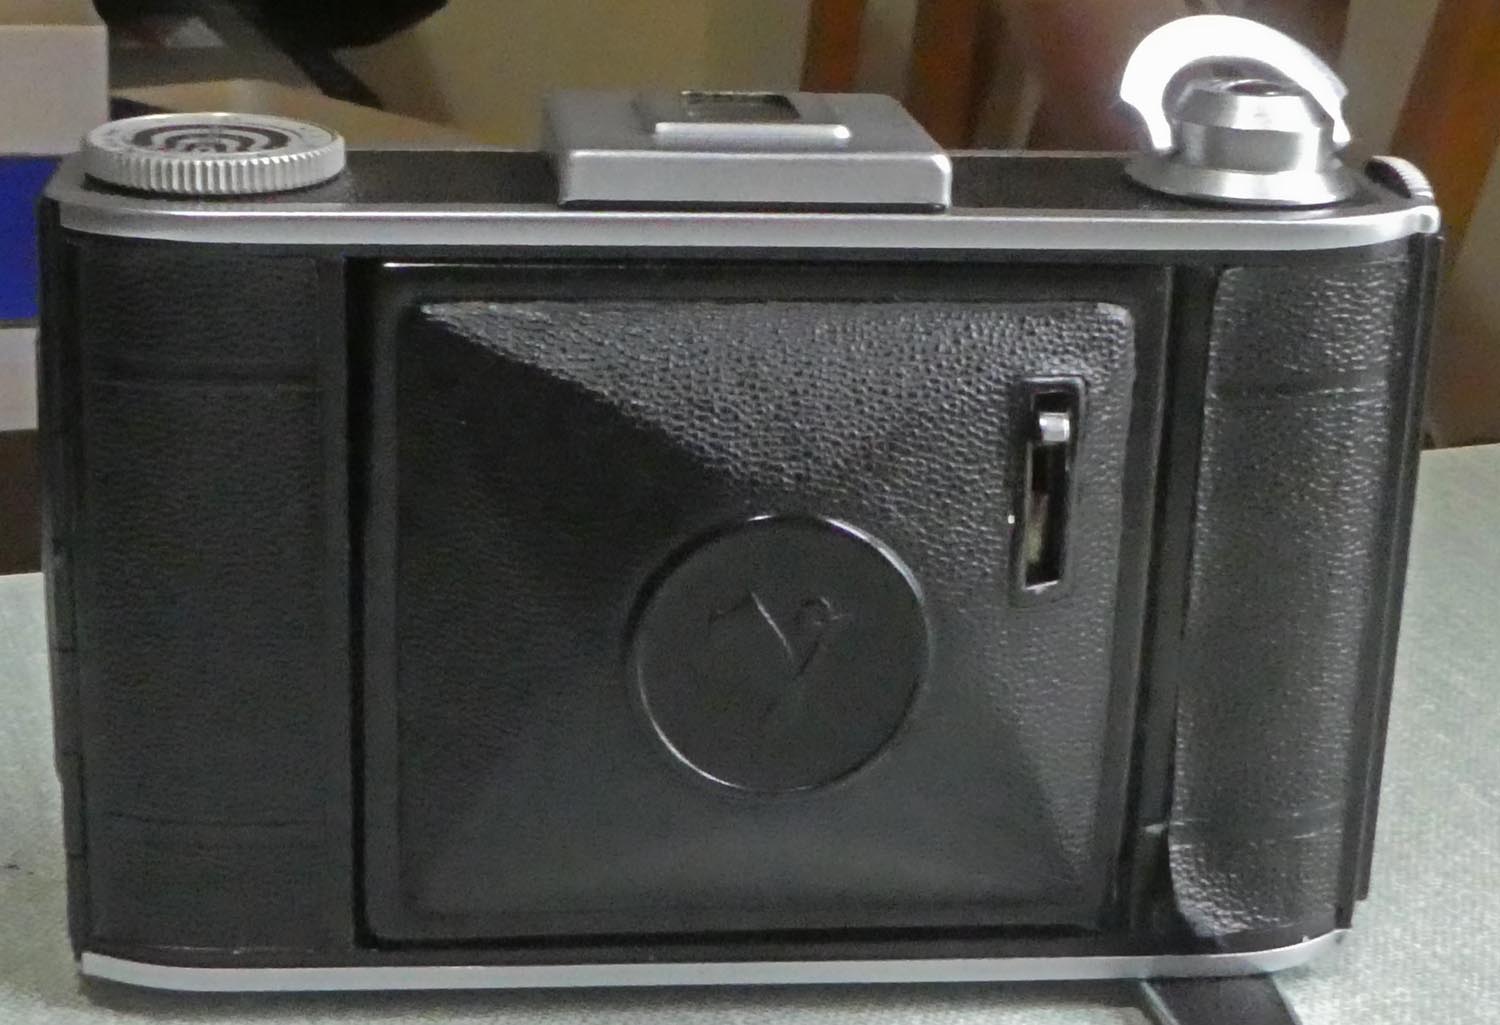 voigtlander camera serial numbers